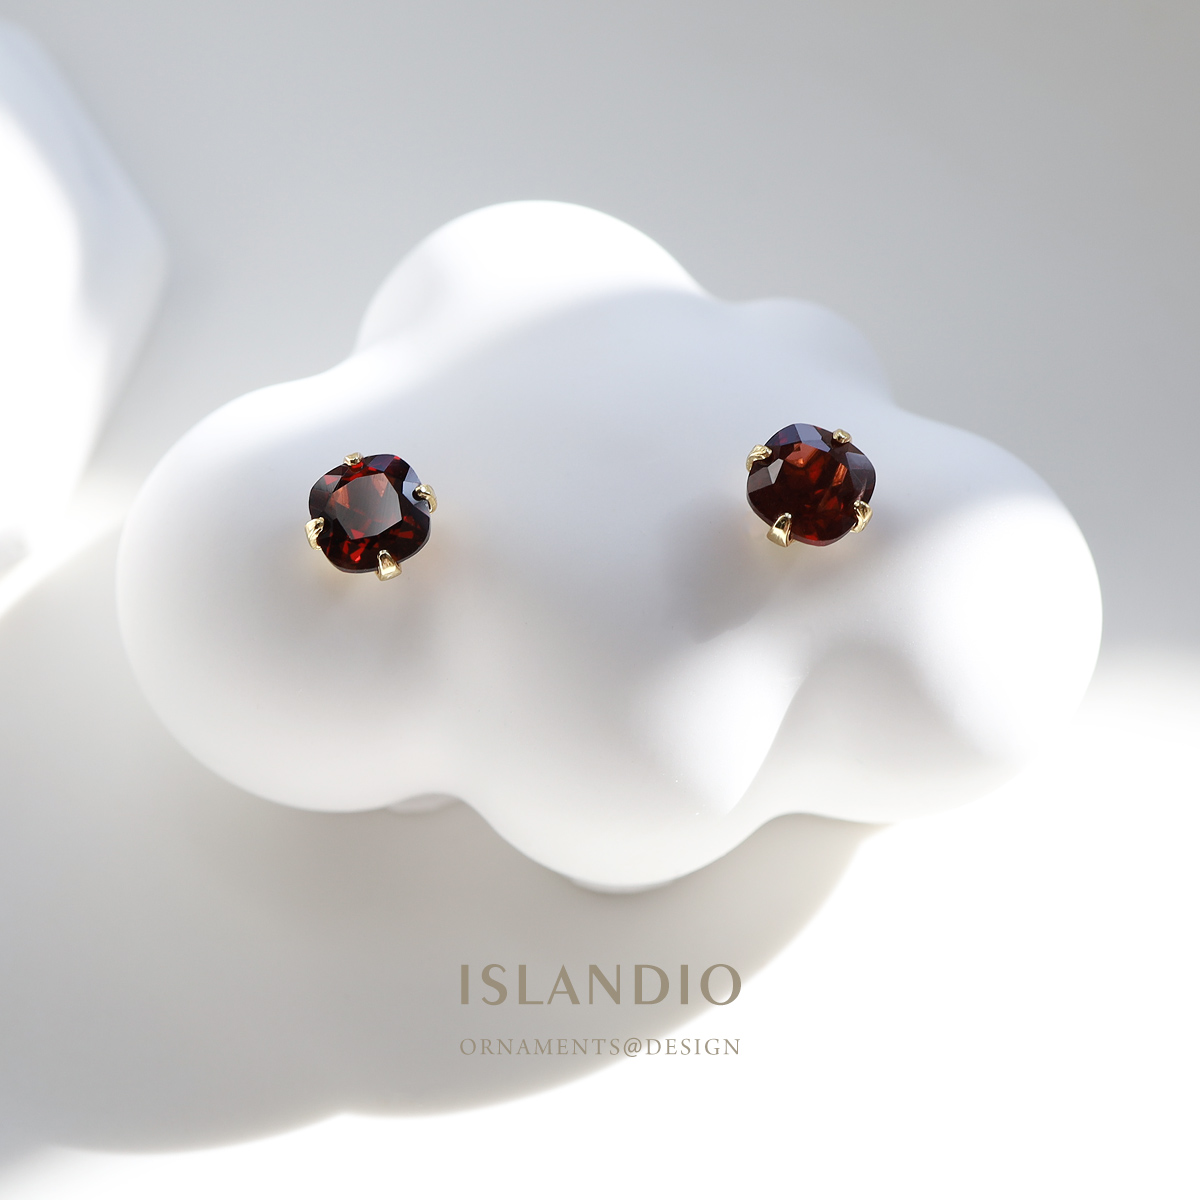 ISLANDIO原创设计天然酒红宝石榴石复古金耳钉圆角方形纯银耳饰女